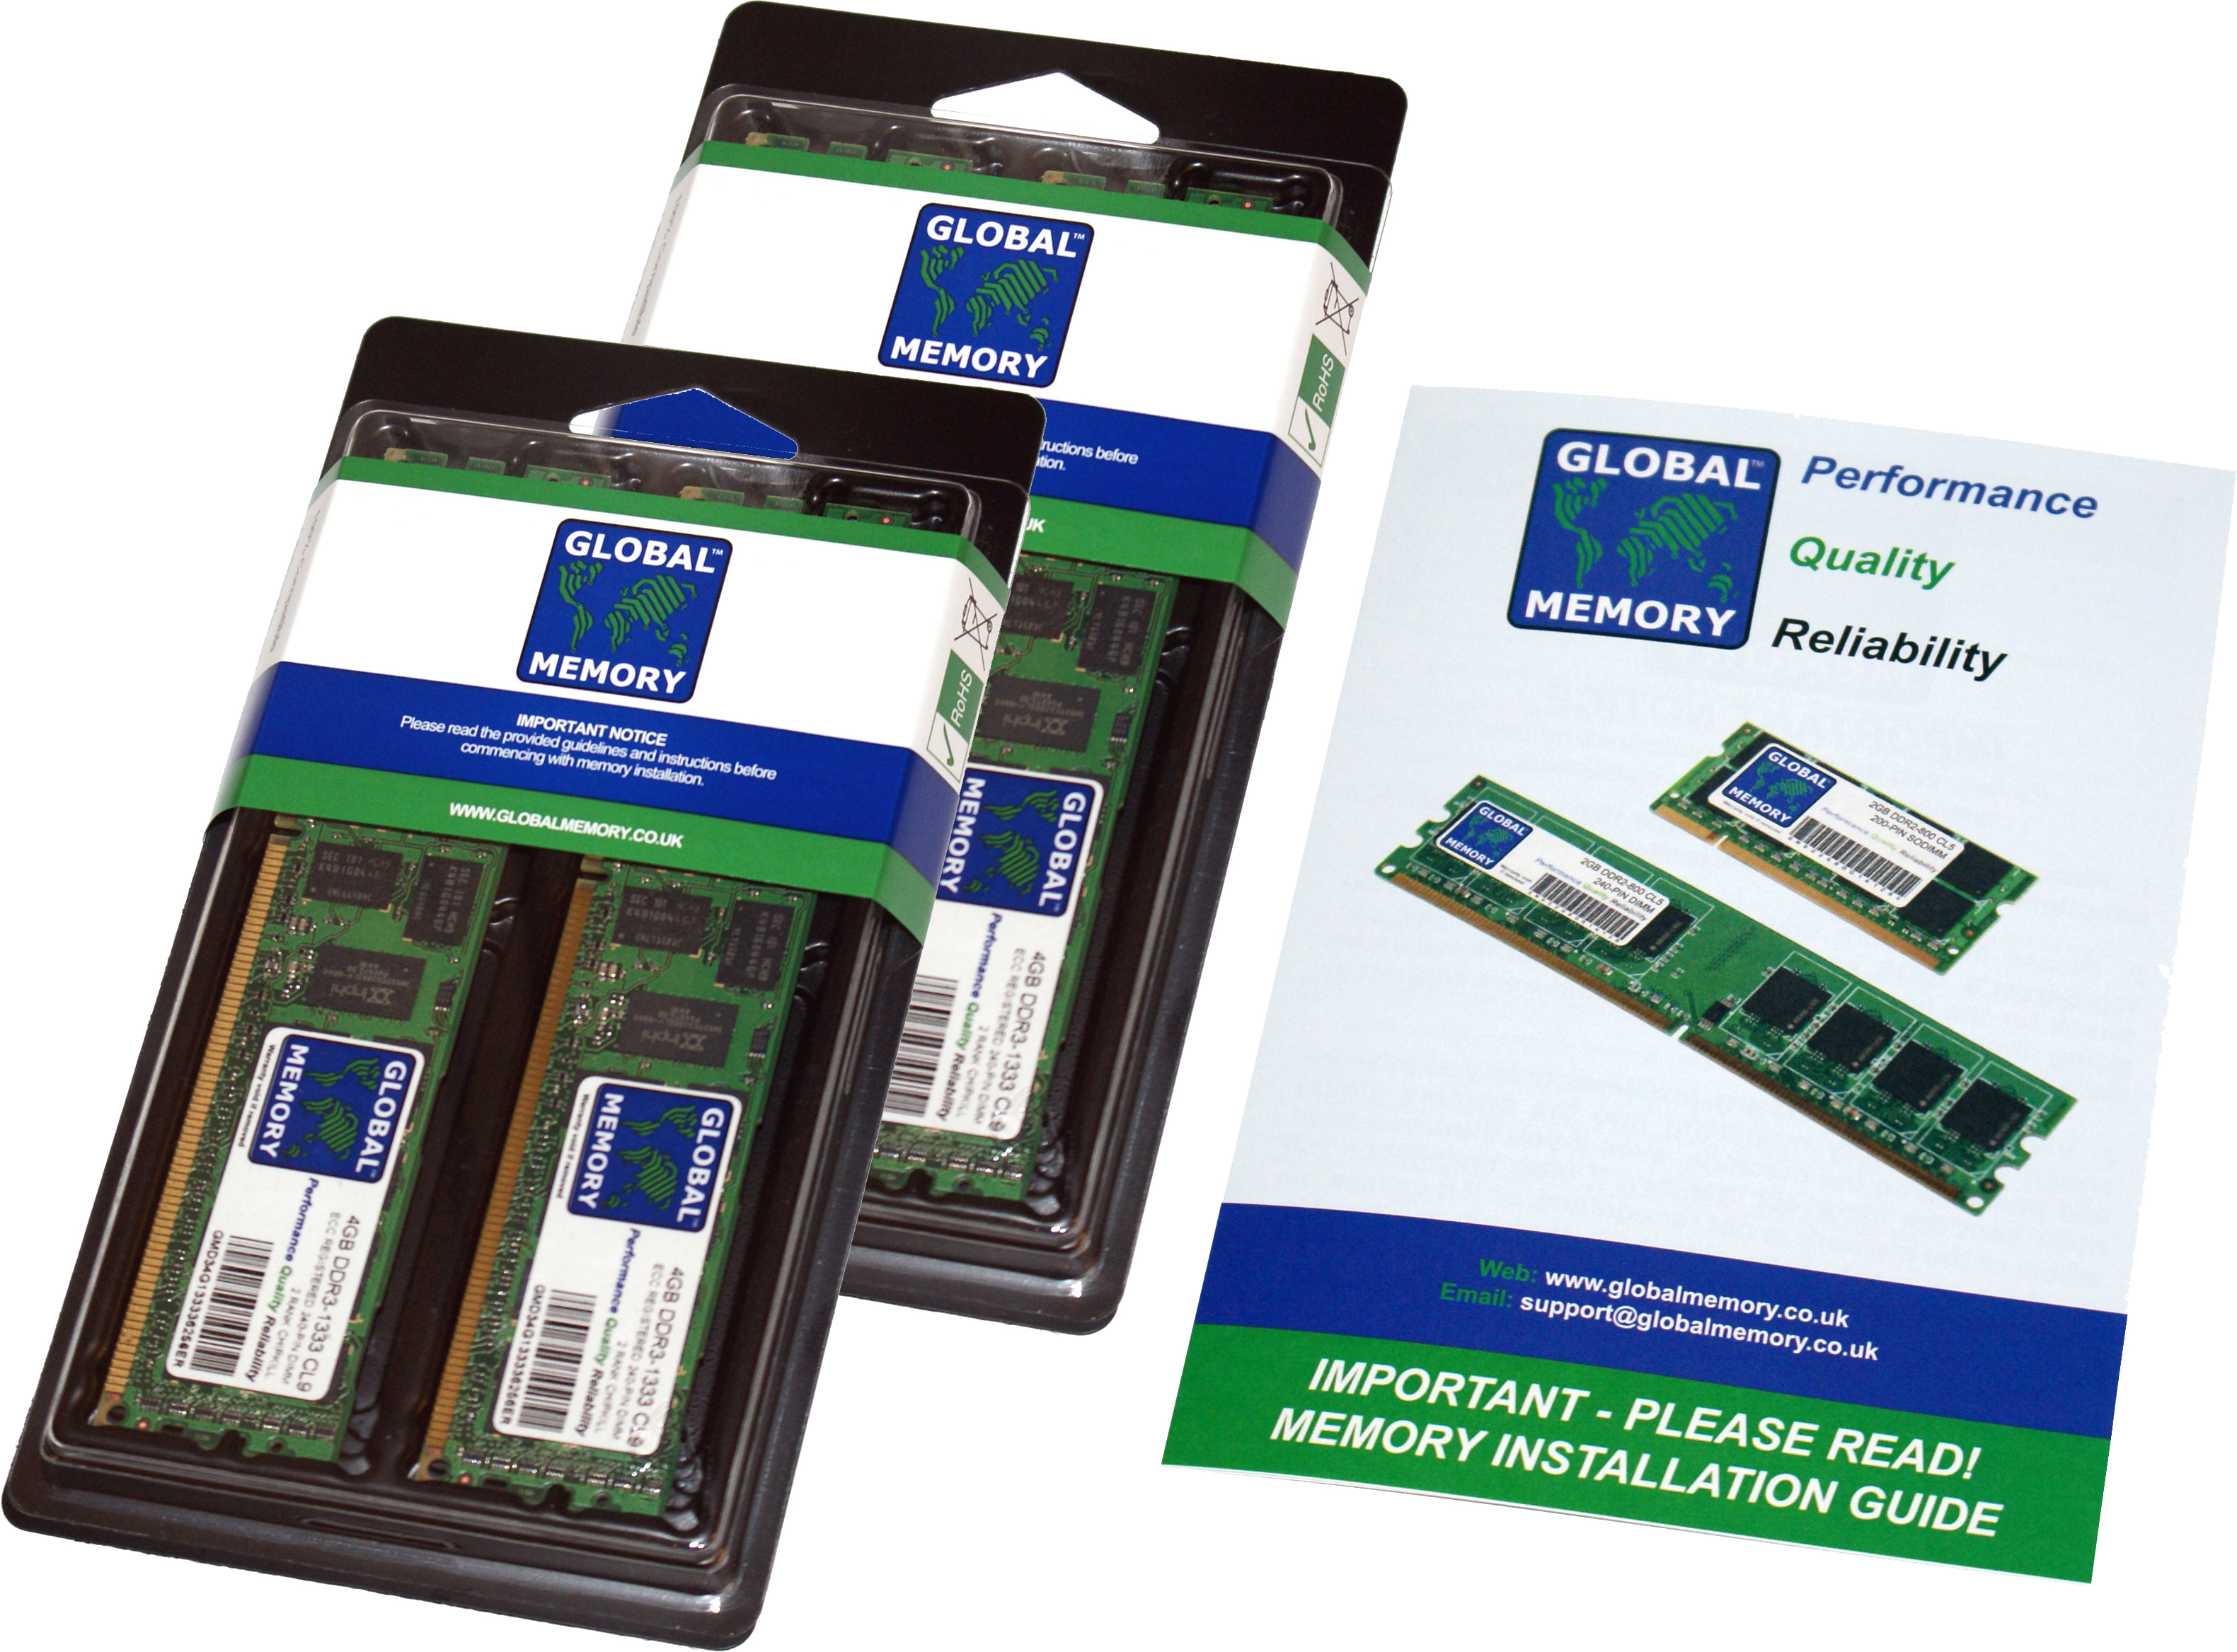 128GB (4 x 32GB) DDR4 2400MHz PC4-19200 288-PIN ECC REGISTERED DIMM (RDIMM) MEMORY RAM KIT FOR HEWLETT-PACKARD SERVERS/WORKSTATIONS (8 RANK KIT CHIPKILL)